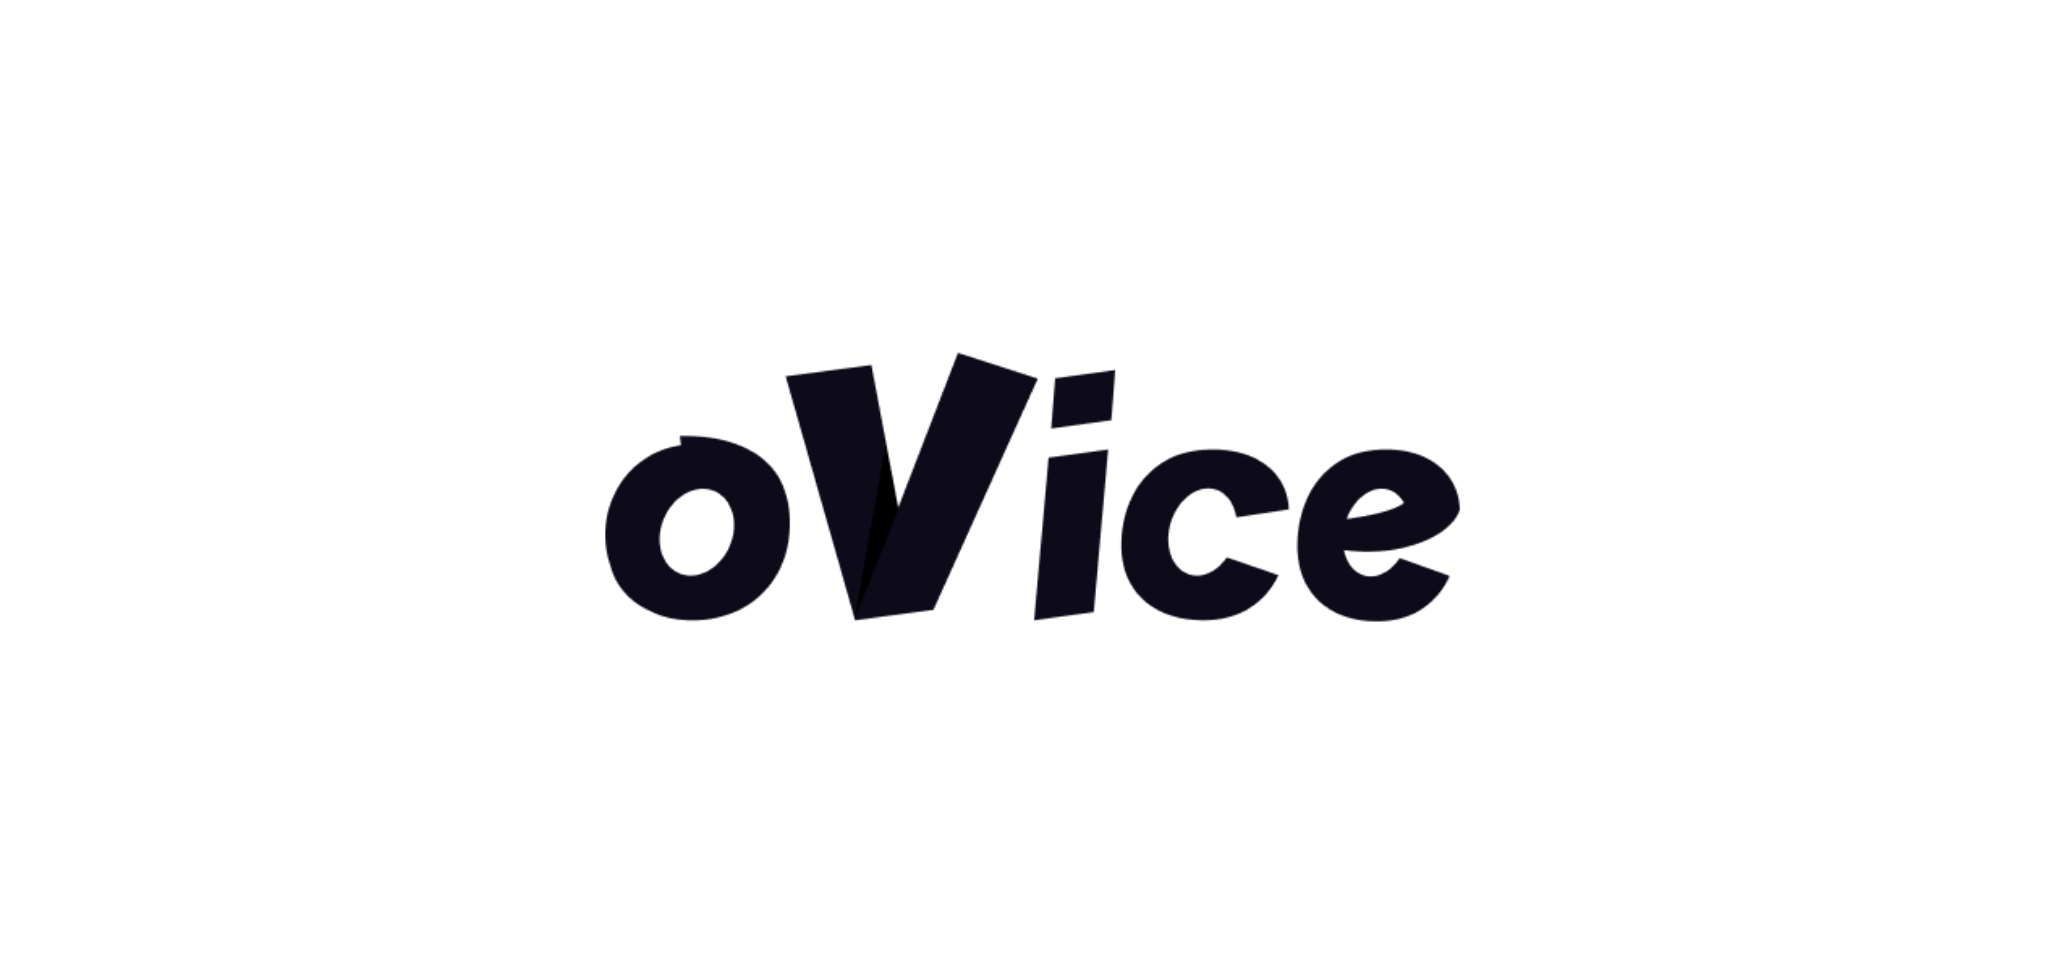 oVice 株式会社